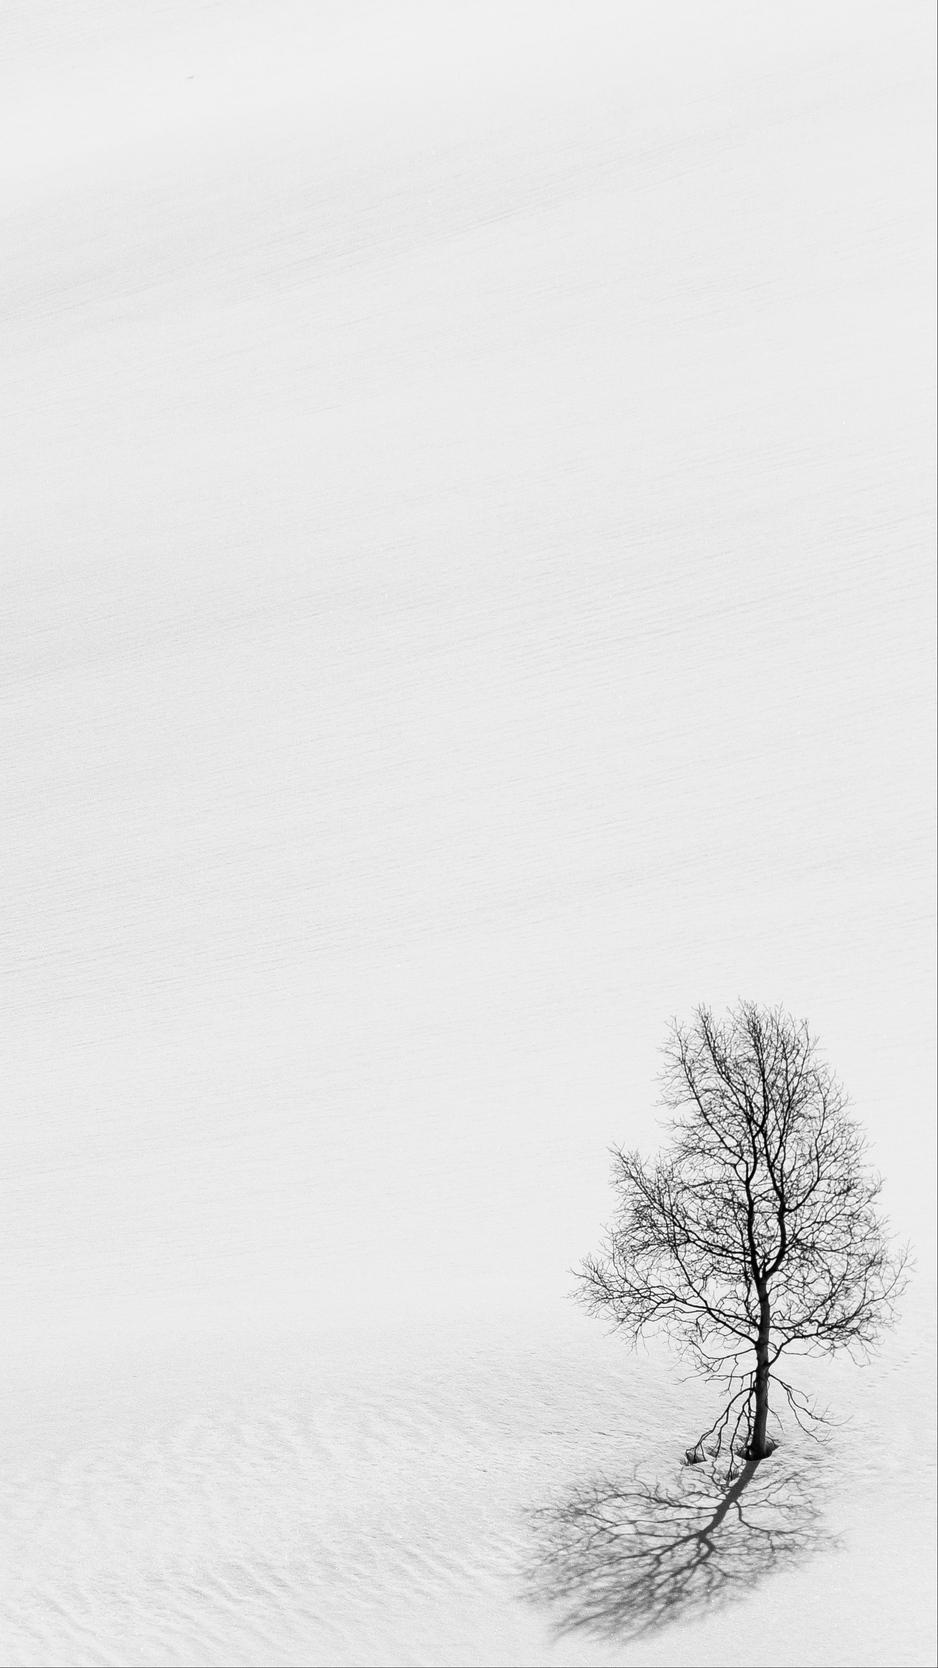 Download wallpaper 938x1668 tree, snow, minimalism, bw